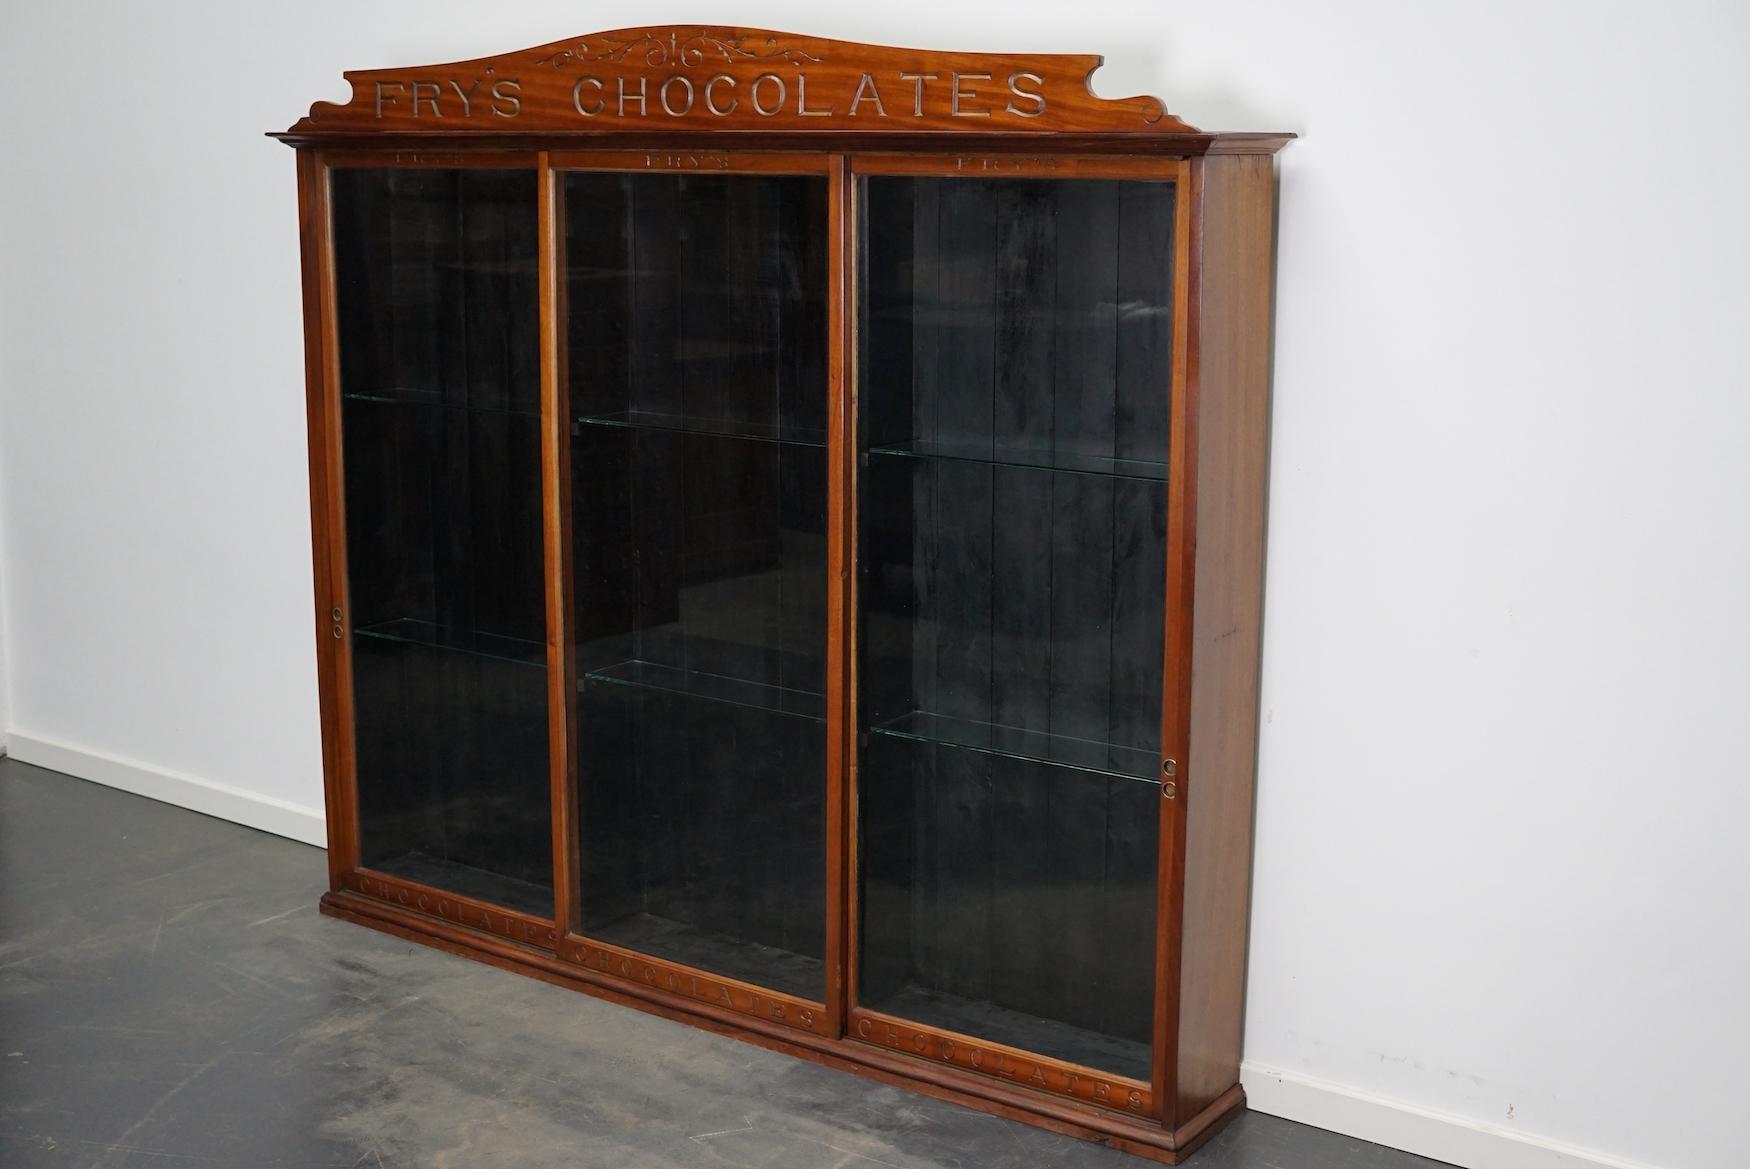 Una vitrina victoriana de caoba muy especial hecha para Fry's Chocolates. Este extraordinario armario grande tiene tres puertas de cristal y seis estantes de cristal.